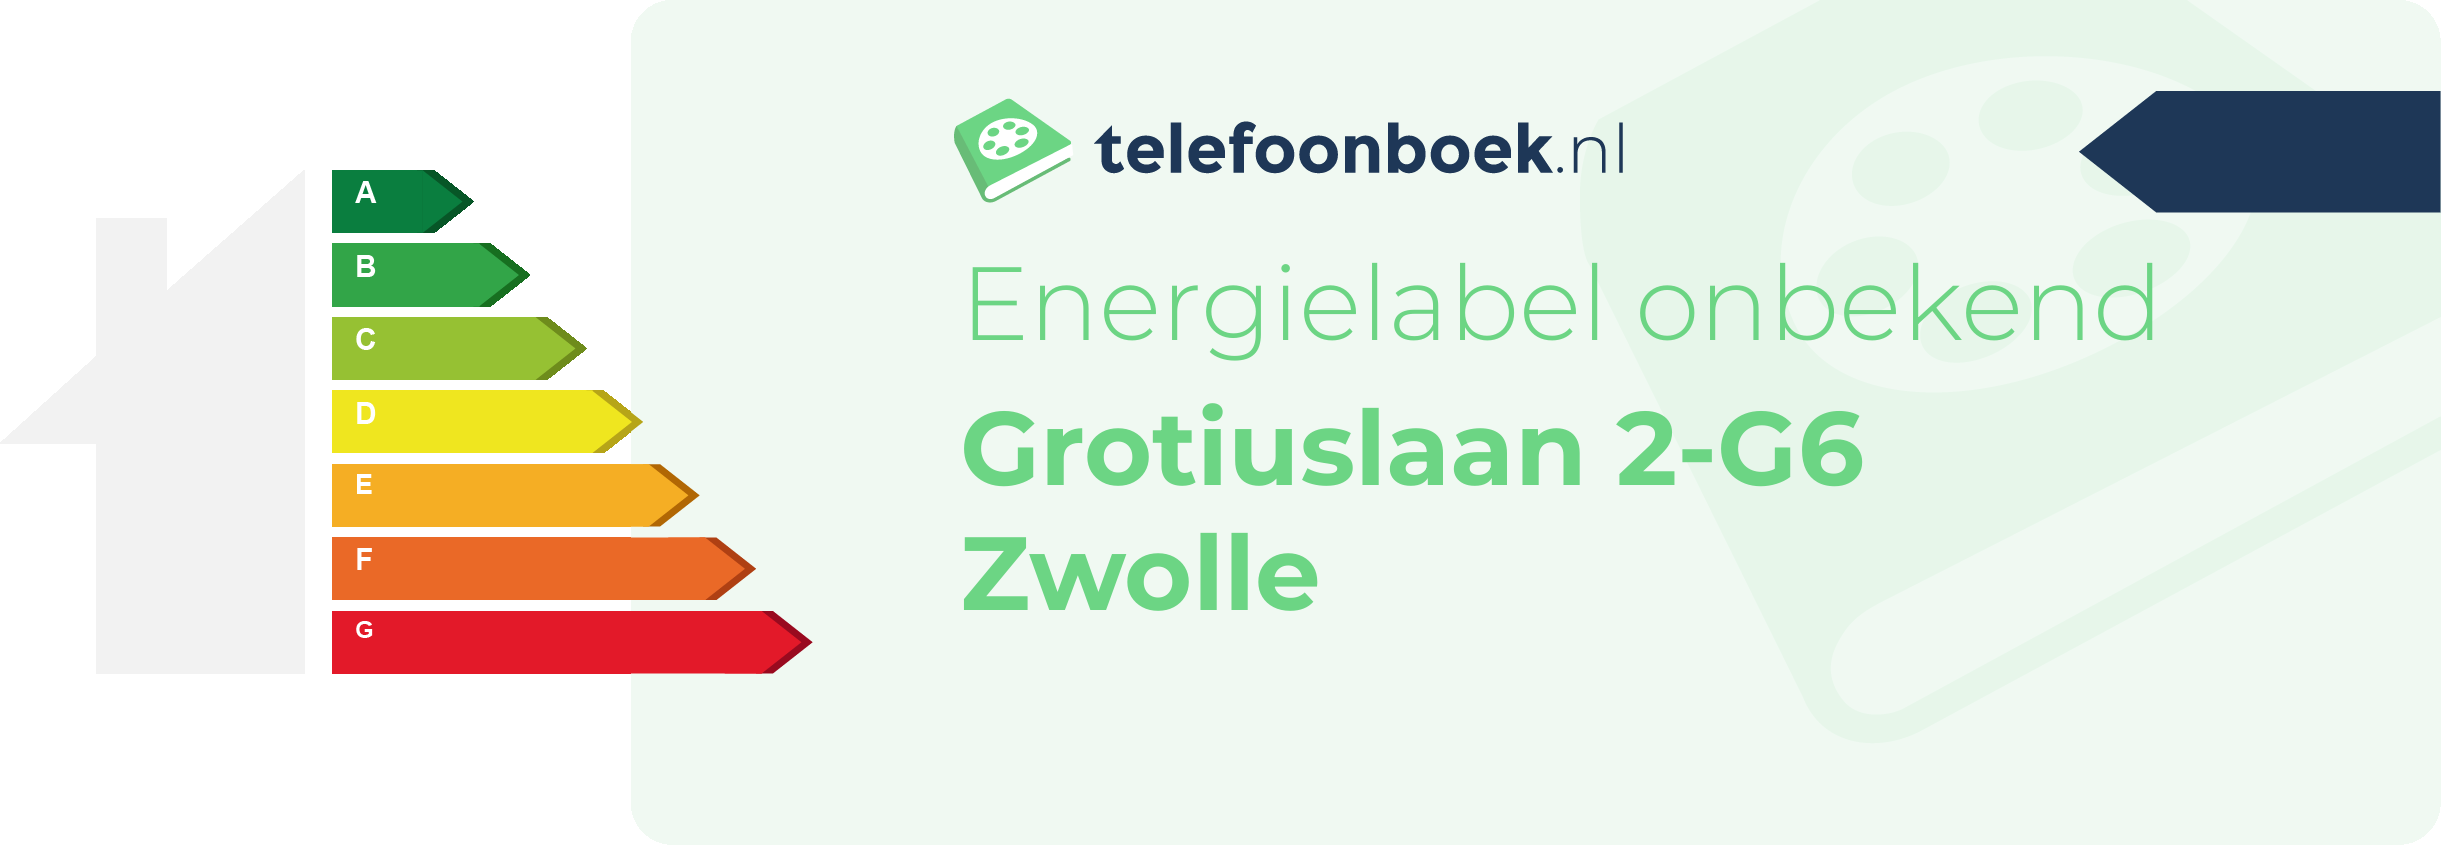 Energielabel Grotiuslaan 2-G6 Zwolle